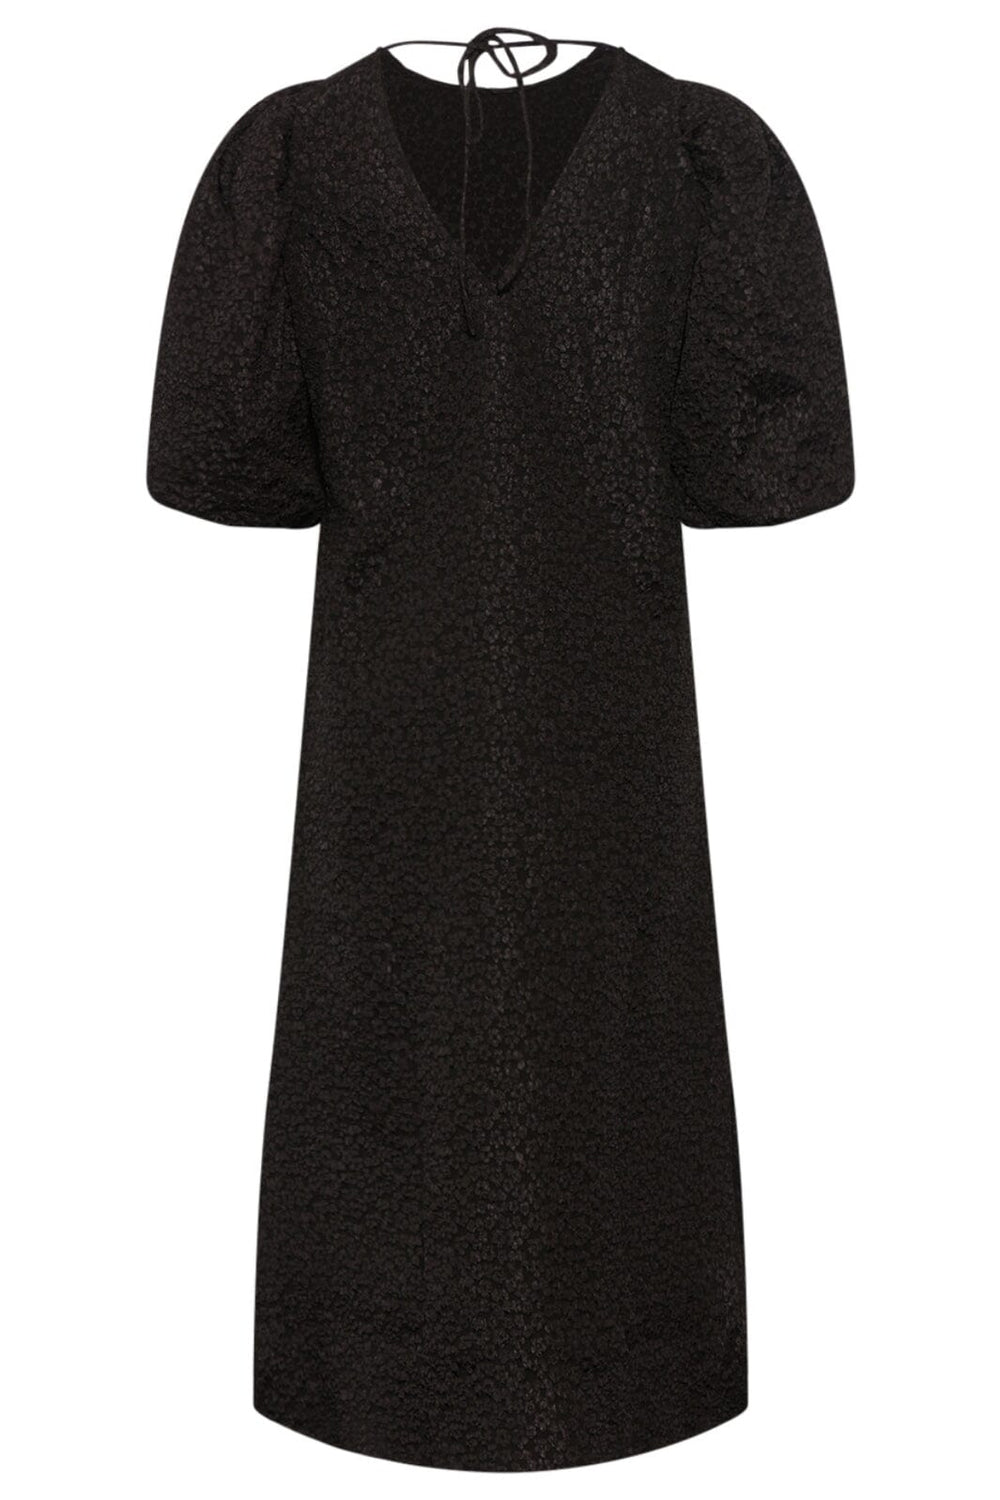 Noella - Reno Pastis Long Dress - 004 Black Kjoler 